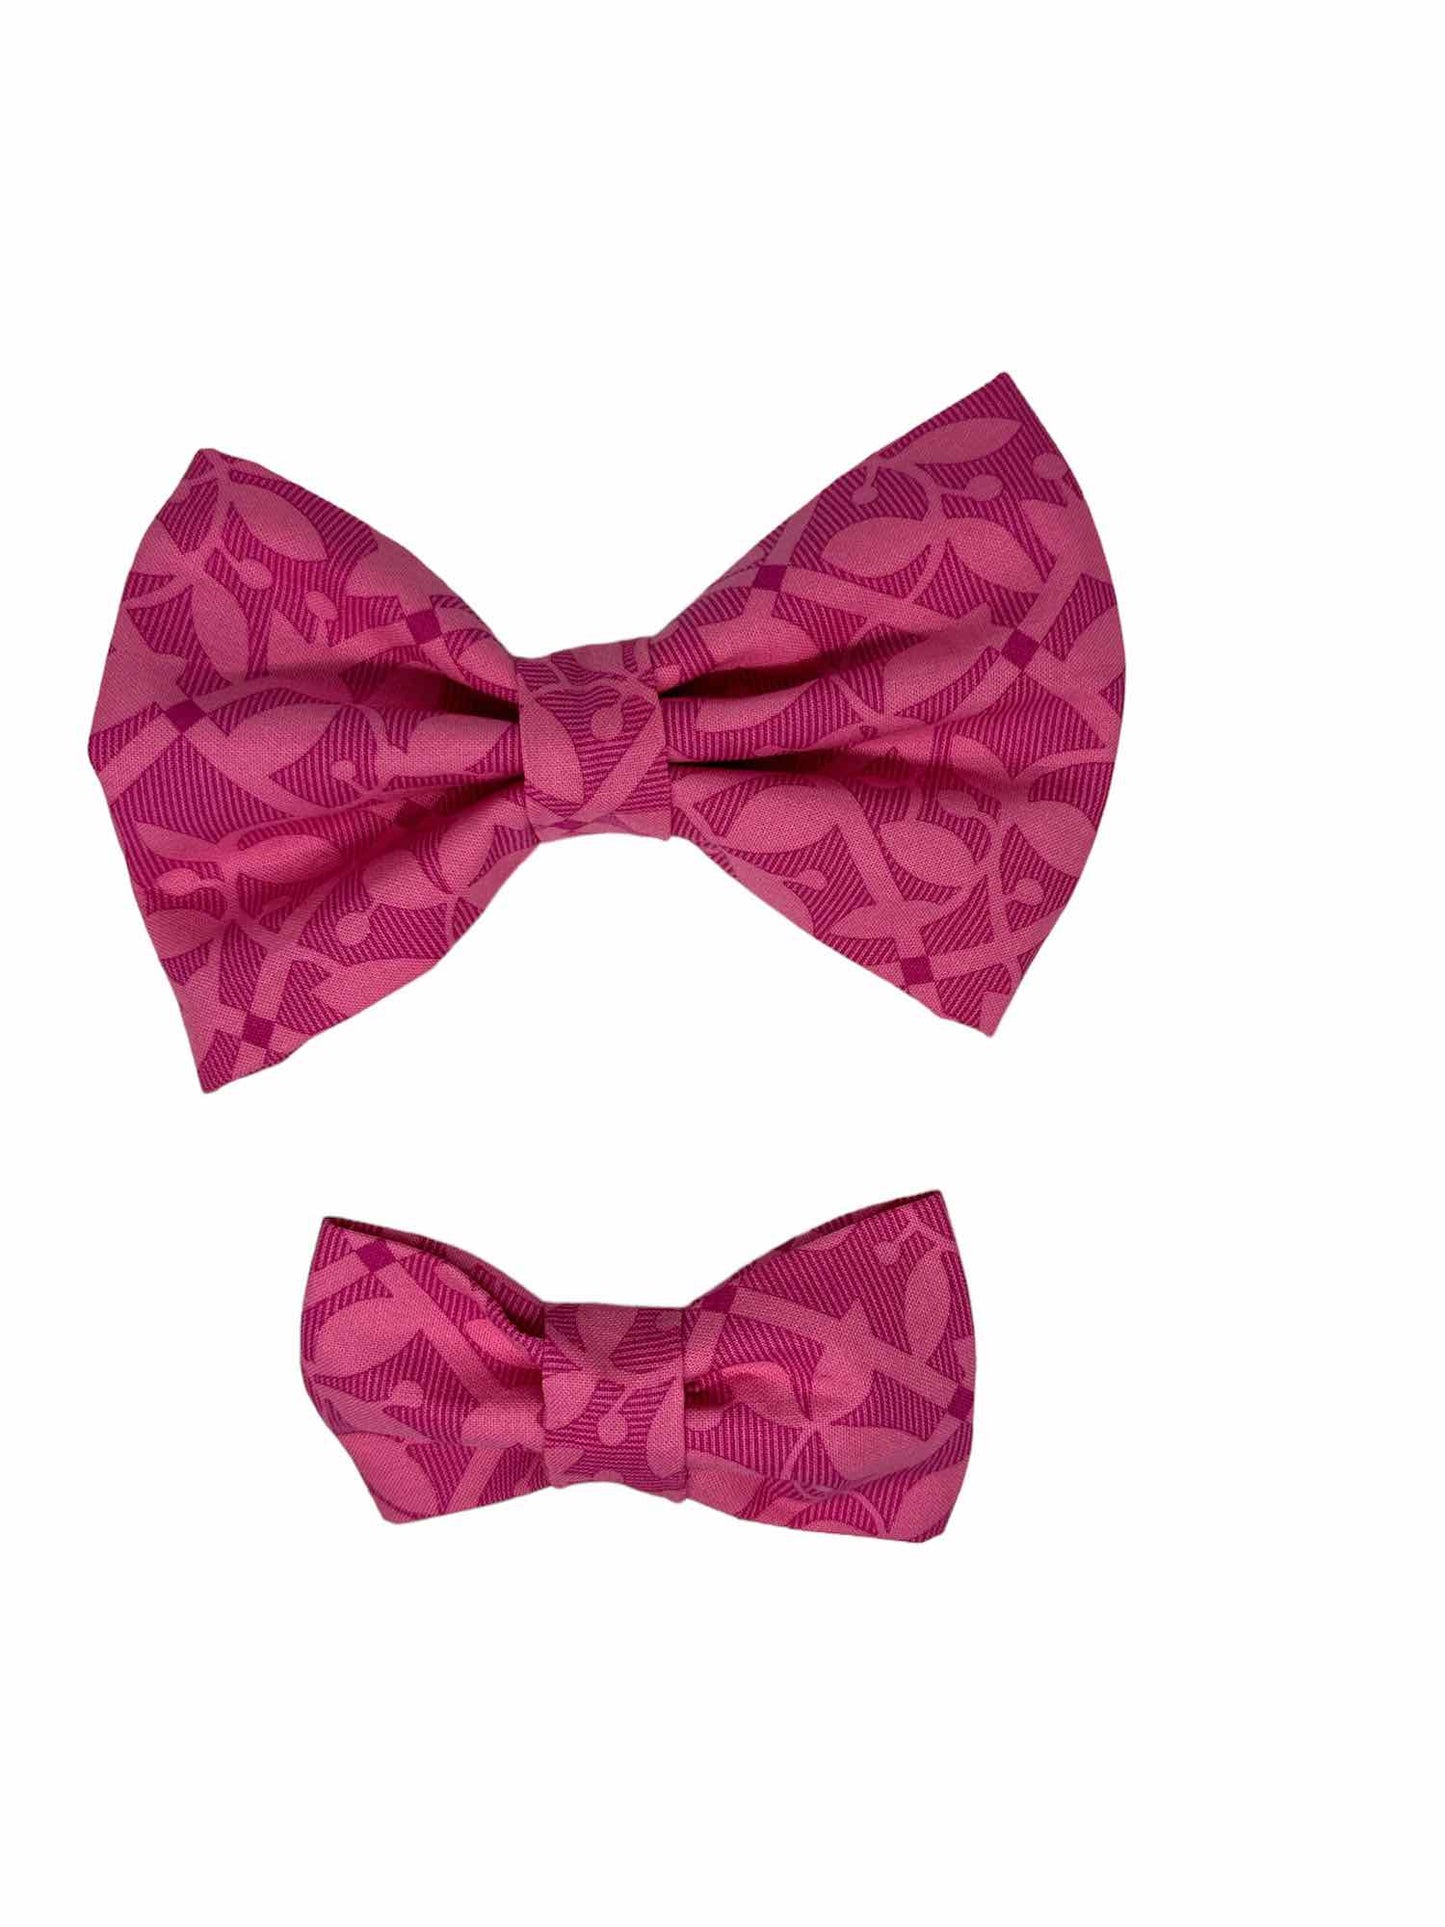 Garden Trellis Pink Dog Bow Tie